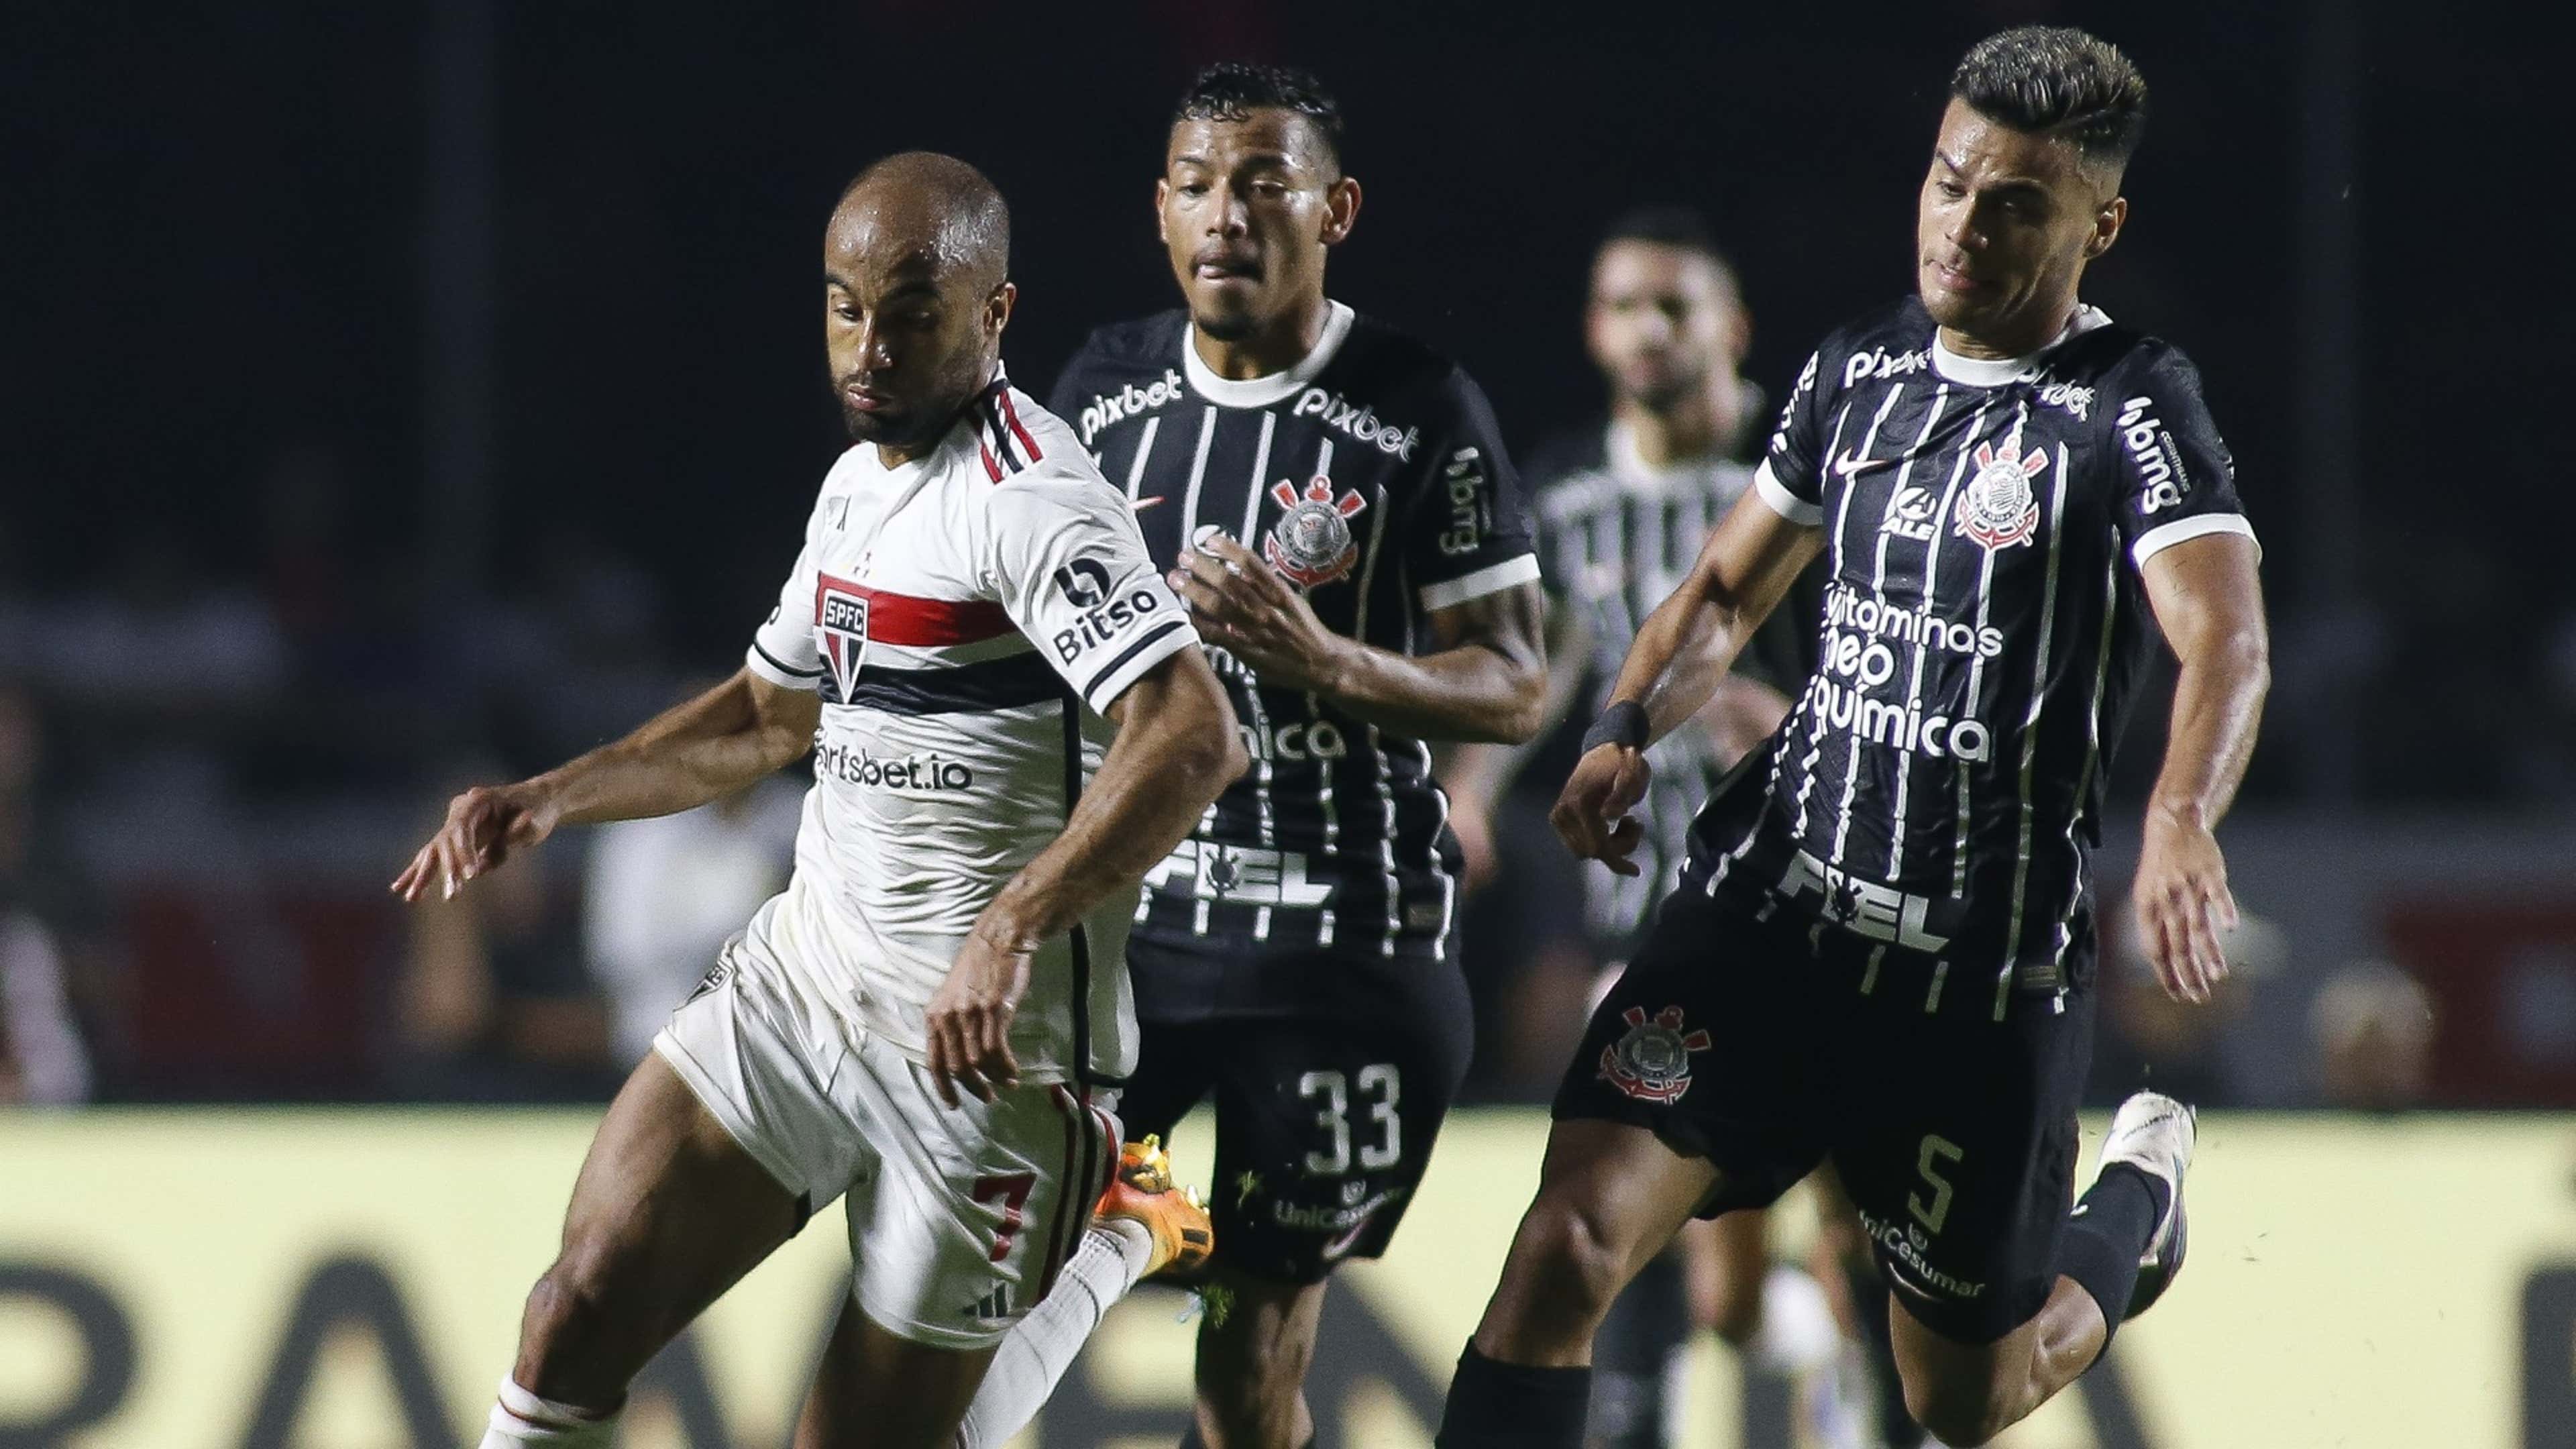 Corinthians é o 5º melhor time do mundo em ranking - Brasil 247